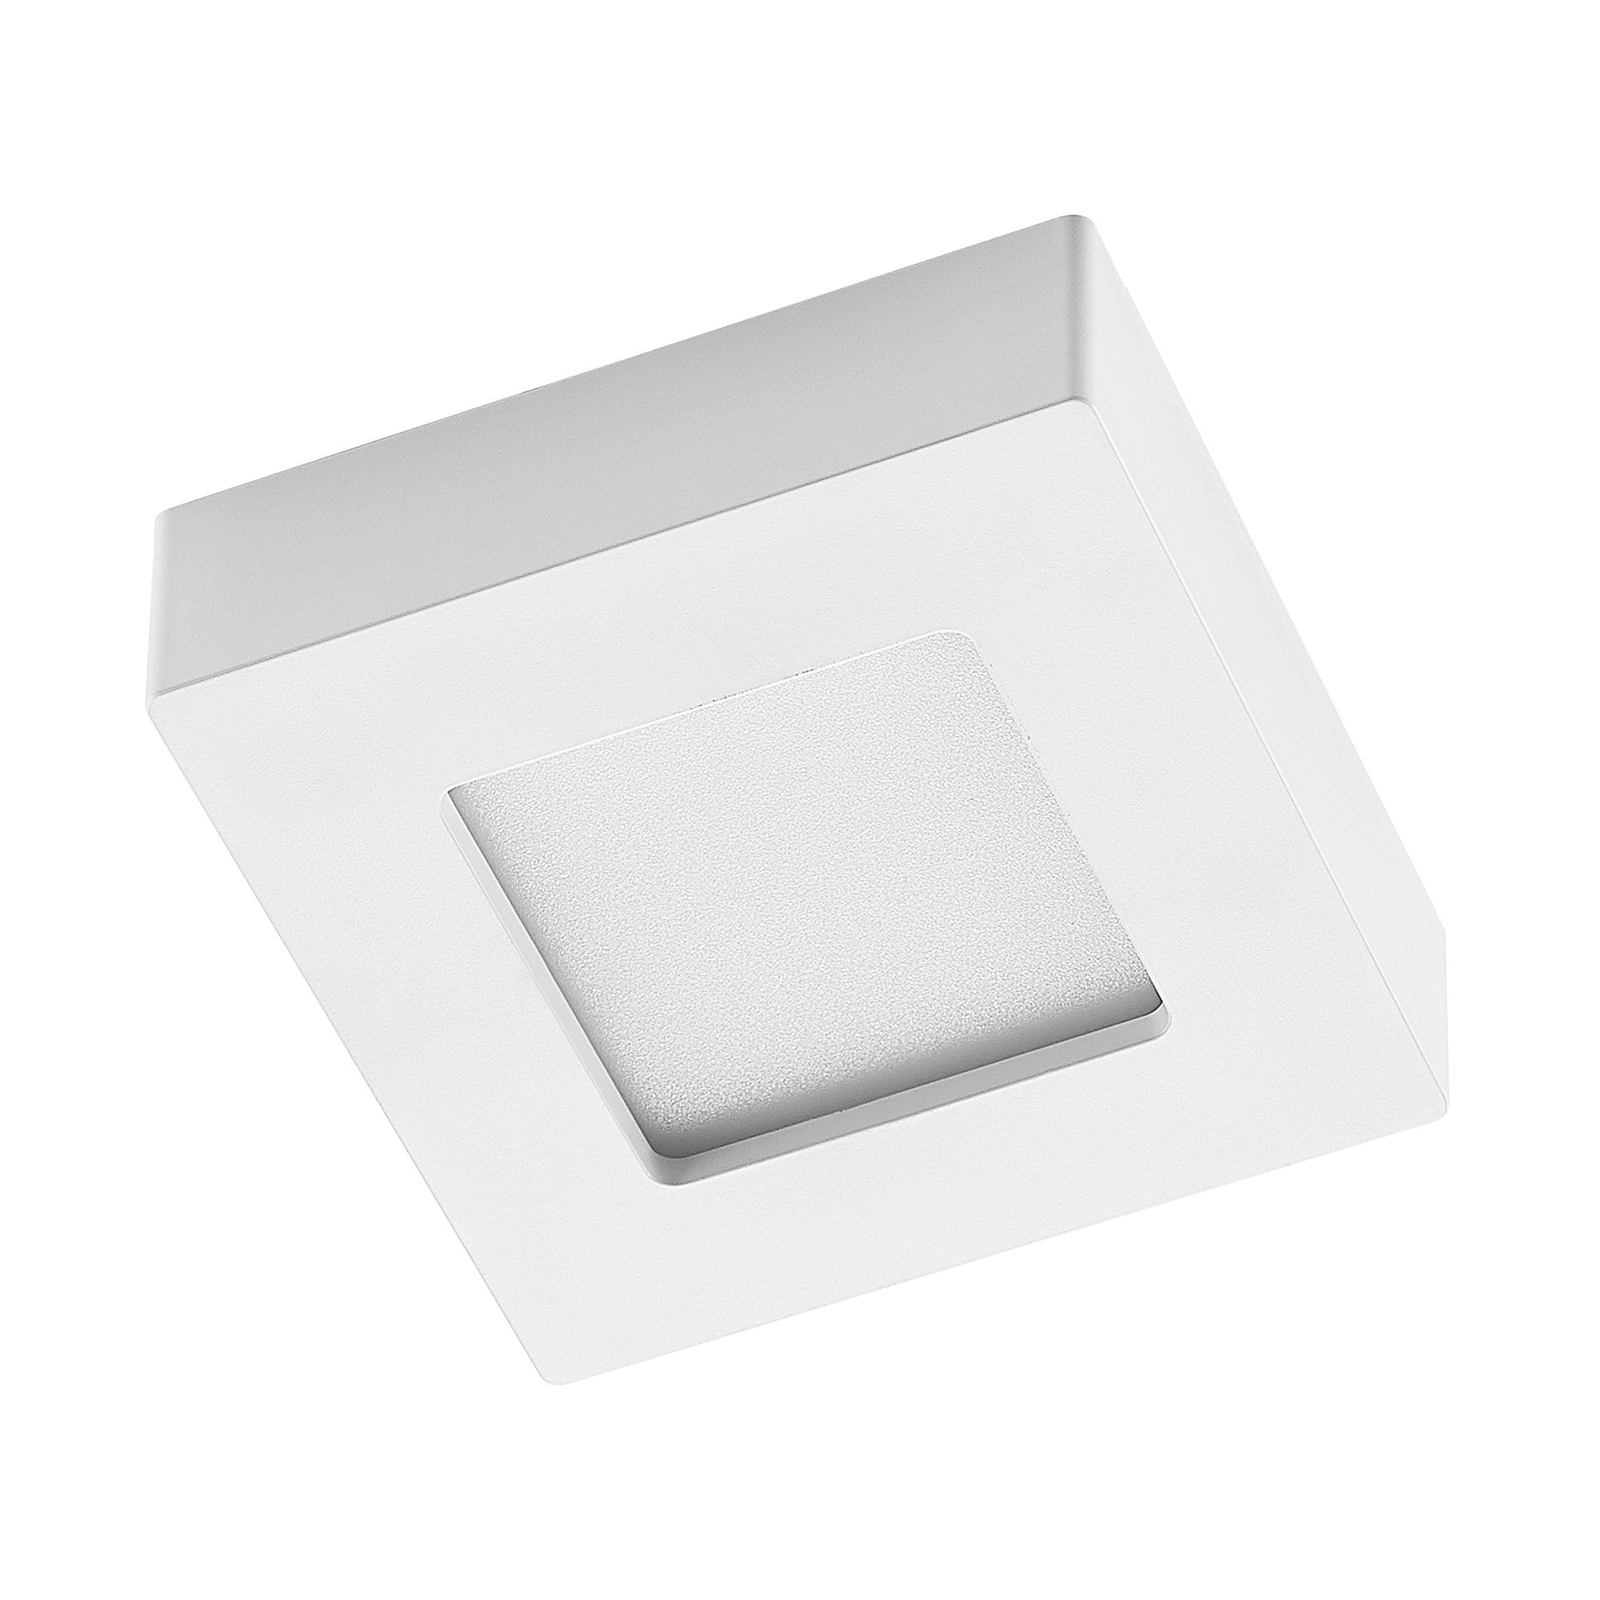 Prios LED-Deckenleuchte Alette, weiß, 12,2 cm, dimmbar